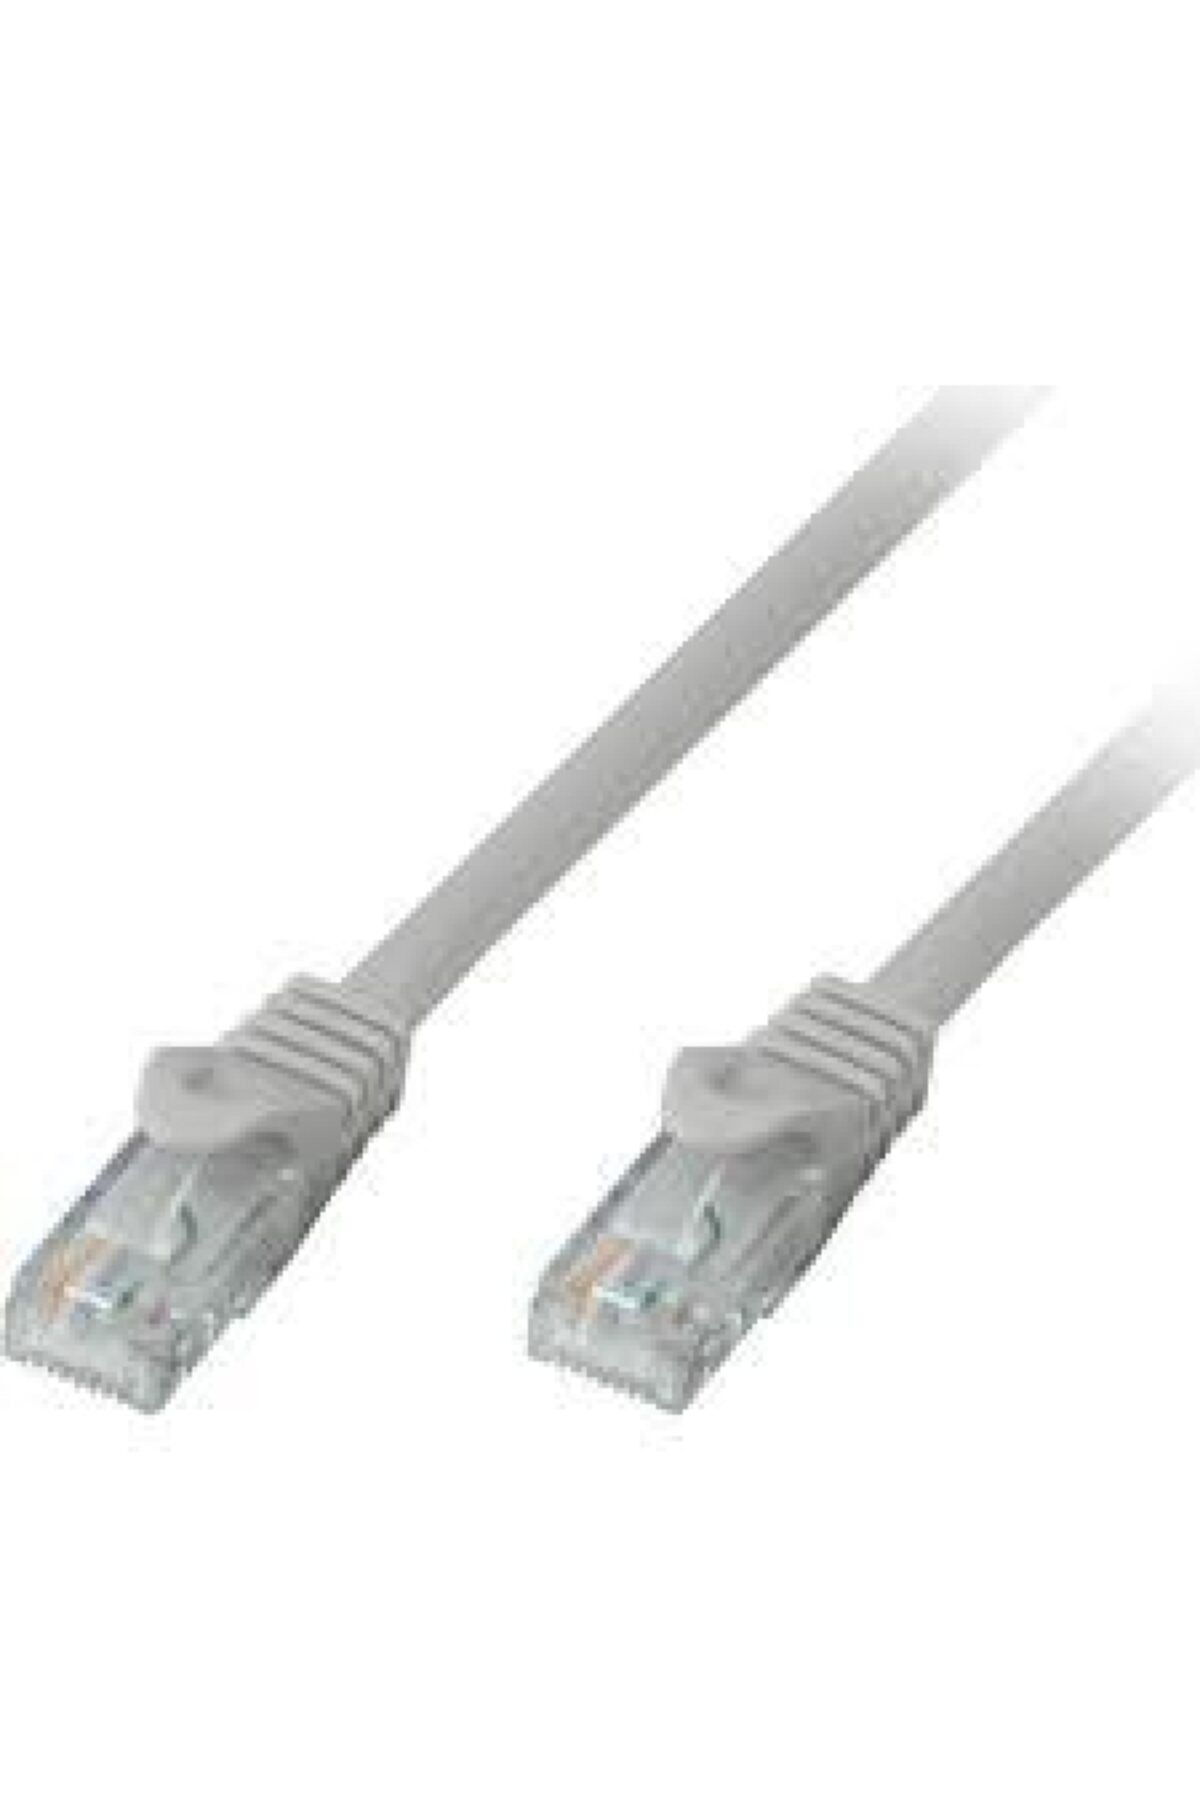 AldımGeldi Cat 6 Ethernet Internet Kablo Metreli Patch Adsl Bağlantı Kablo Boyu 5 Metre